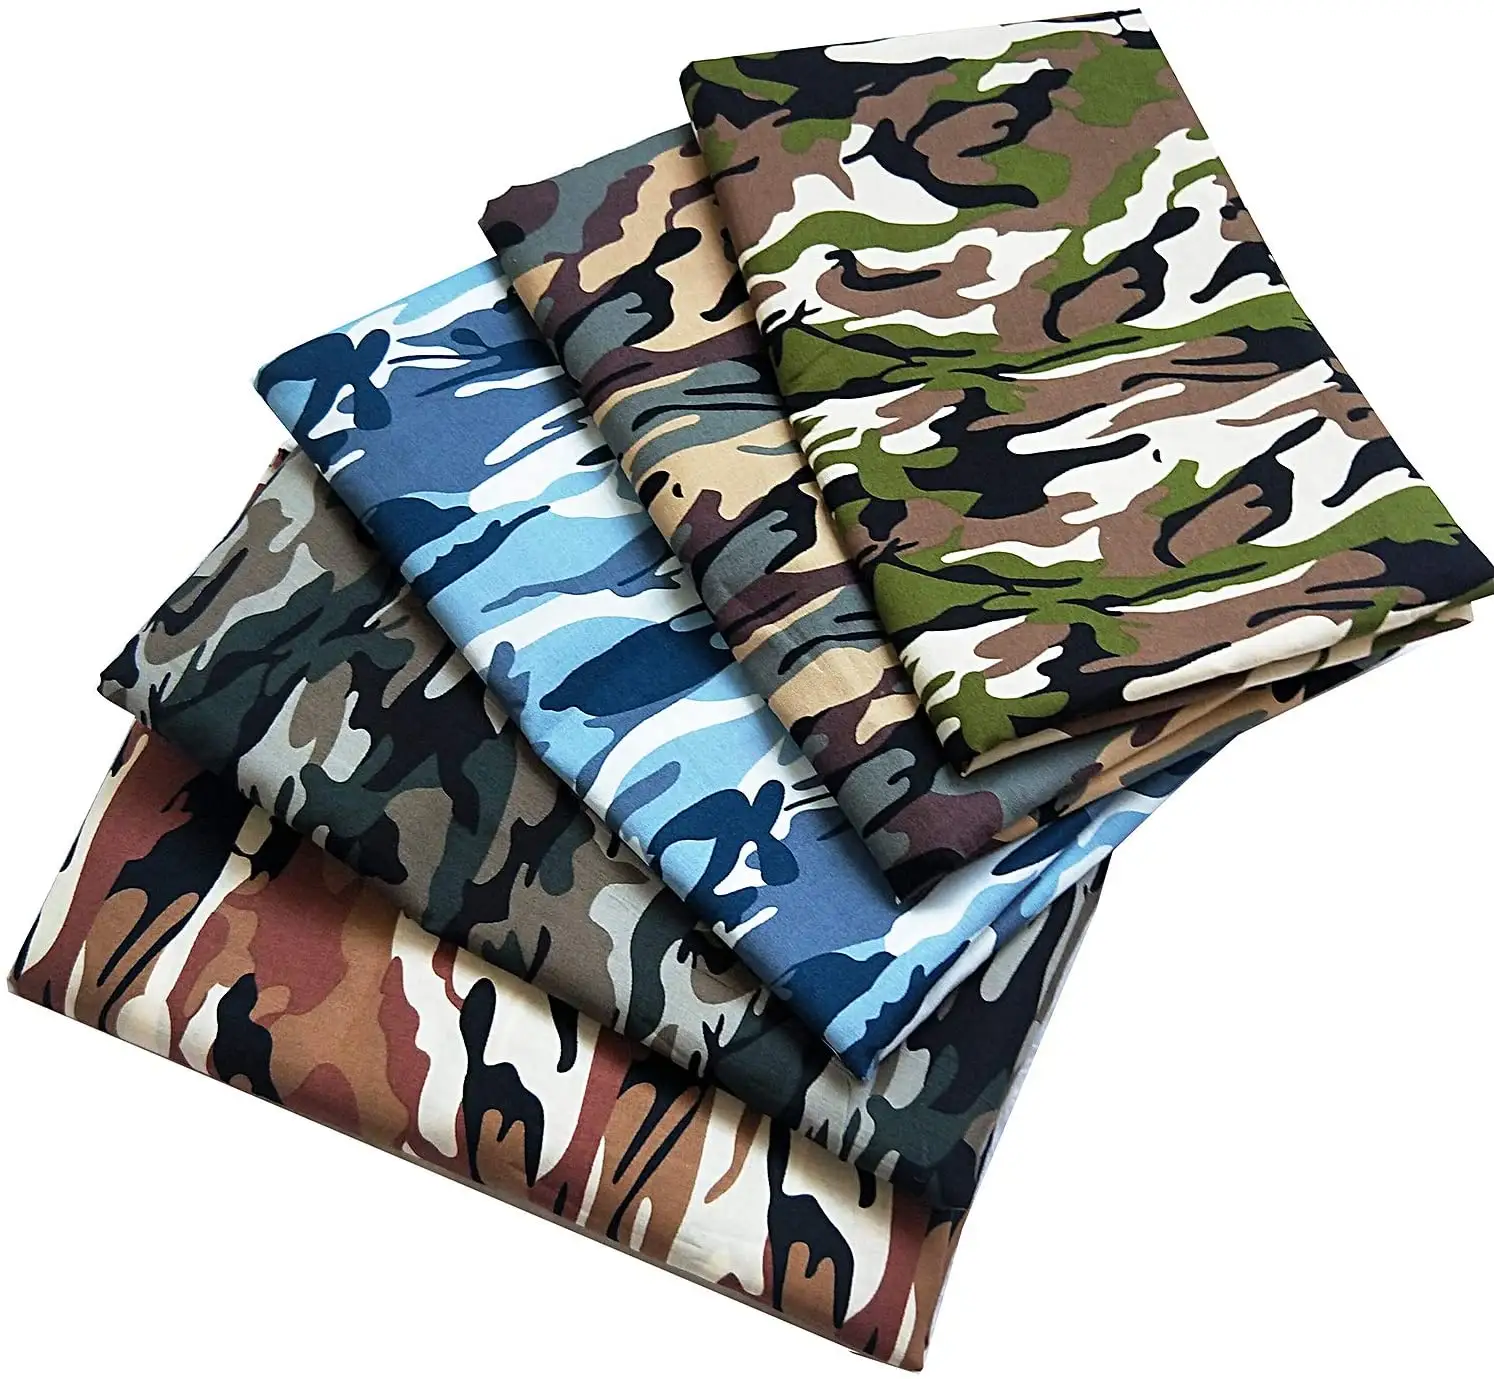 Kustom dicetak tahan air katun kanvas kain tenun teknik untuk tas cocok mainan mencakup bantal untuk wanita dan anak laki-laki